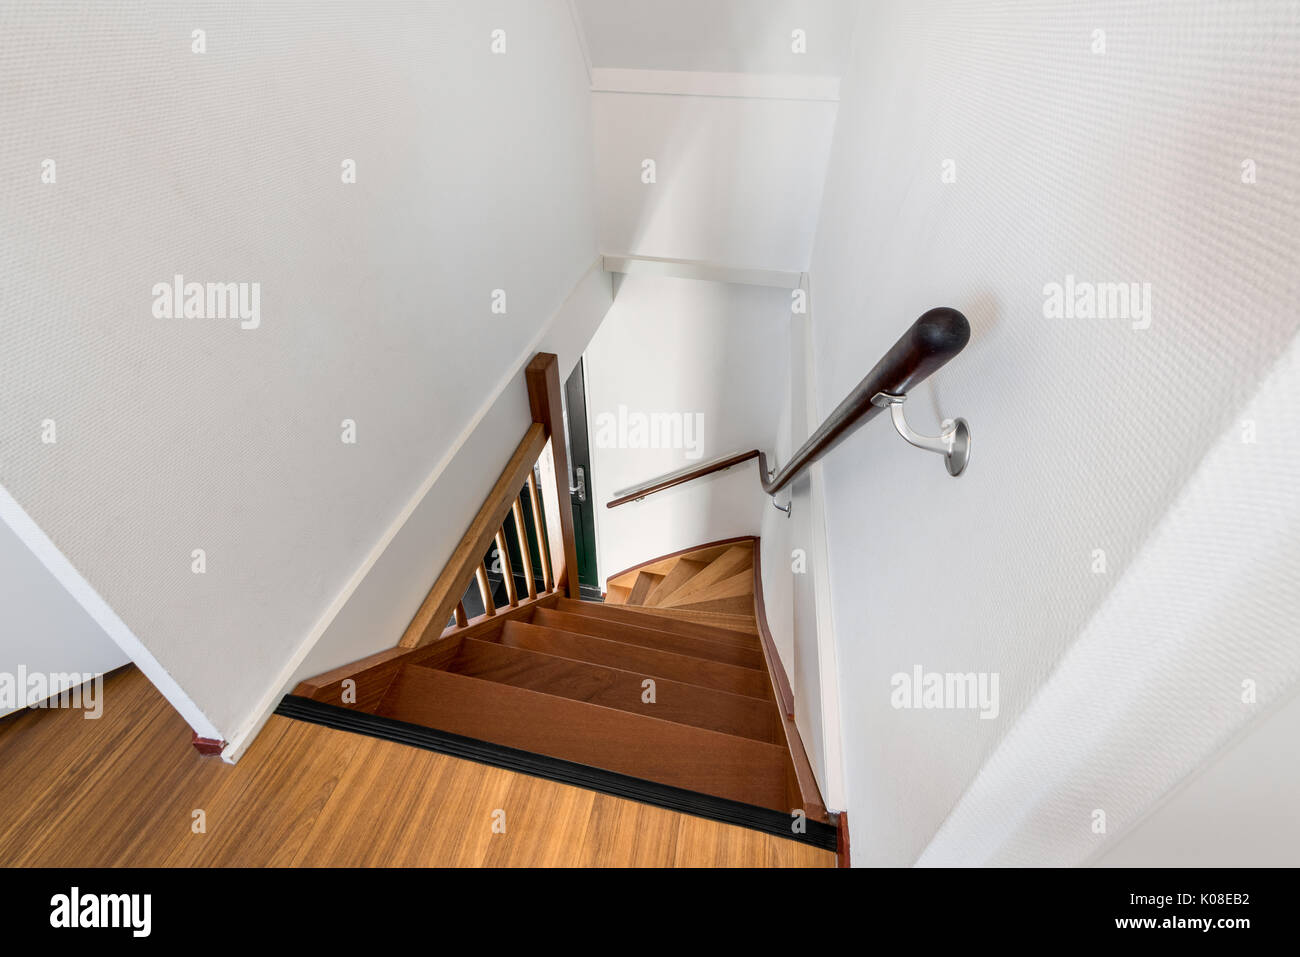 Escalera de la casa moderna de madera Foto de stock